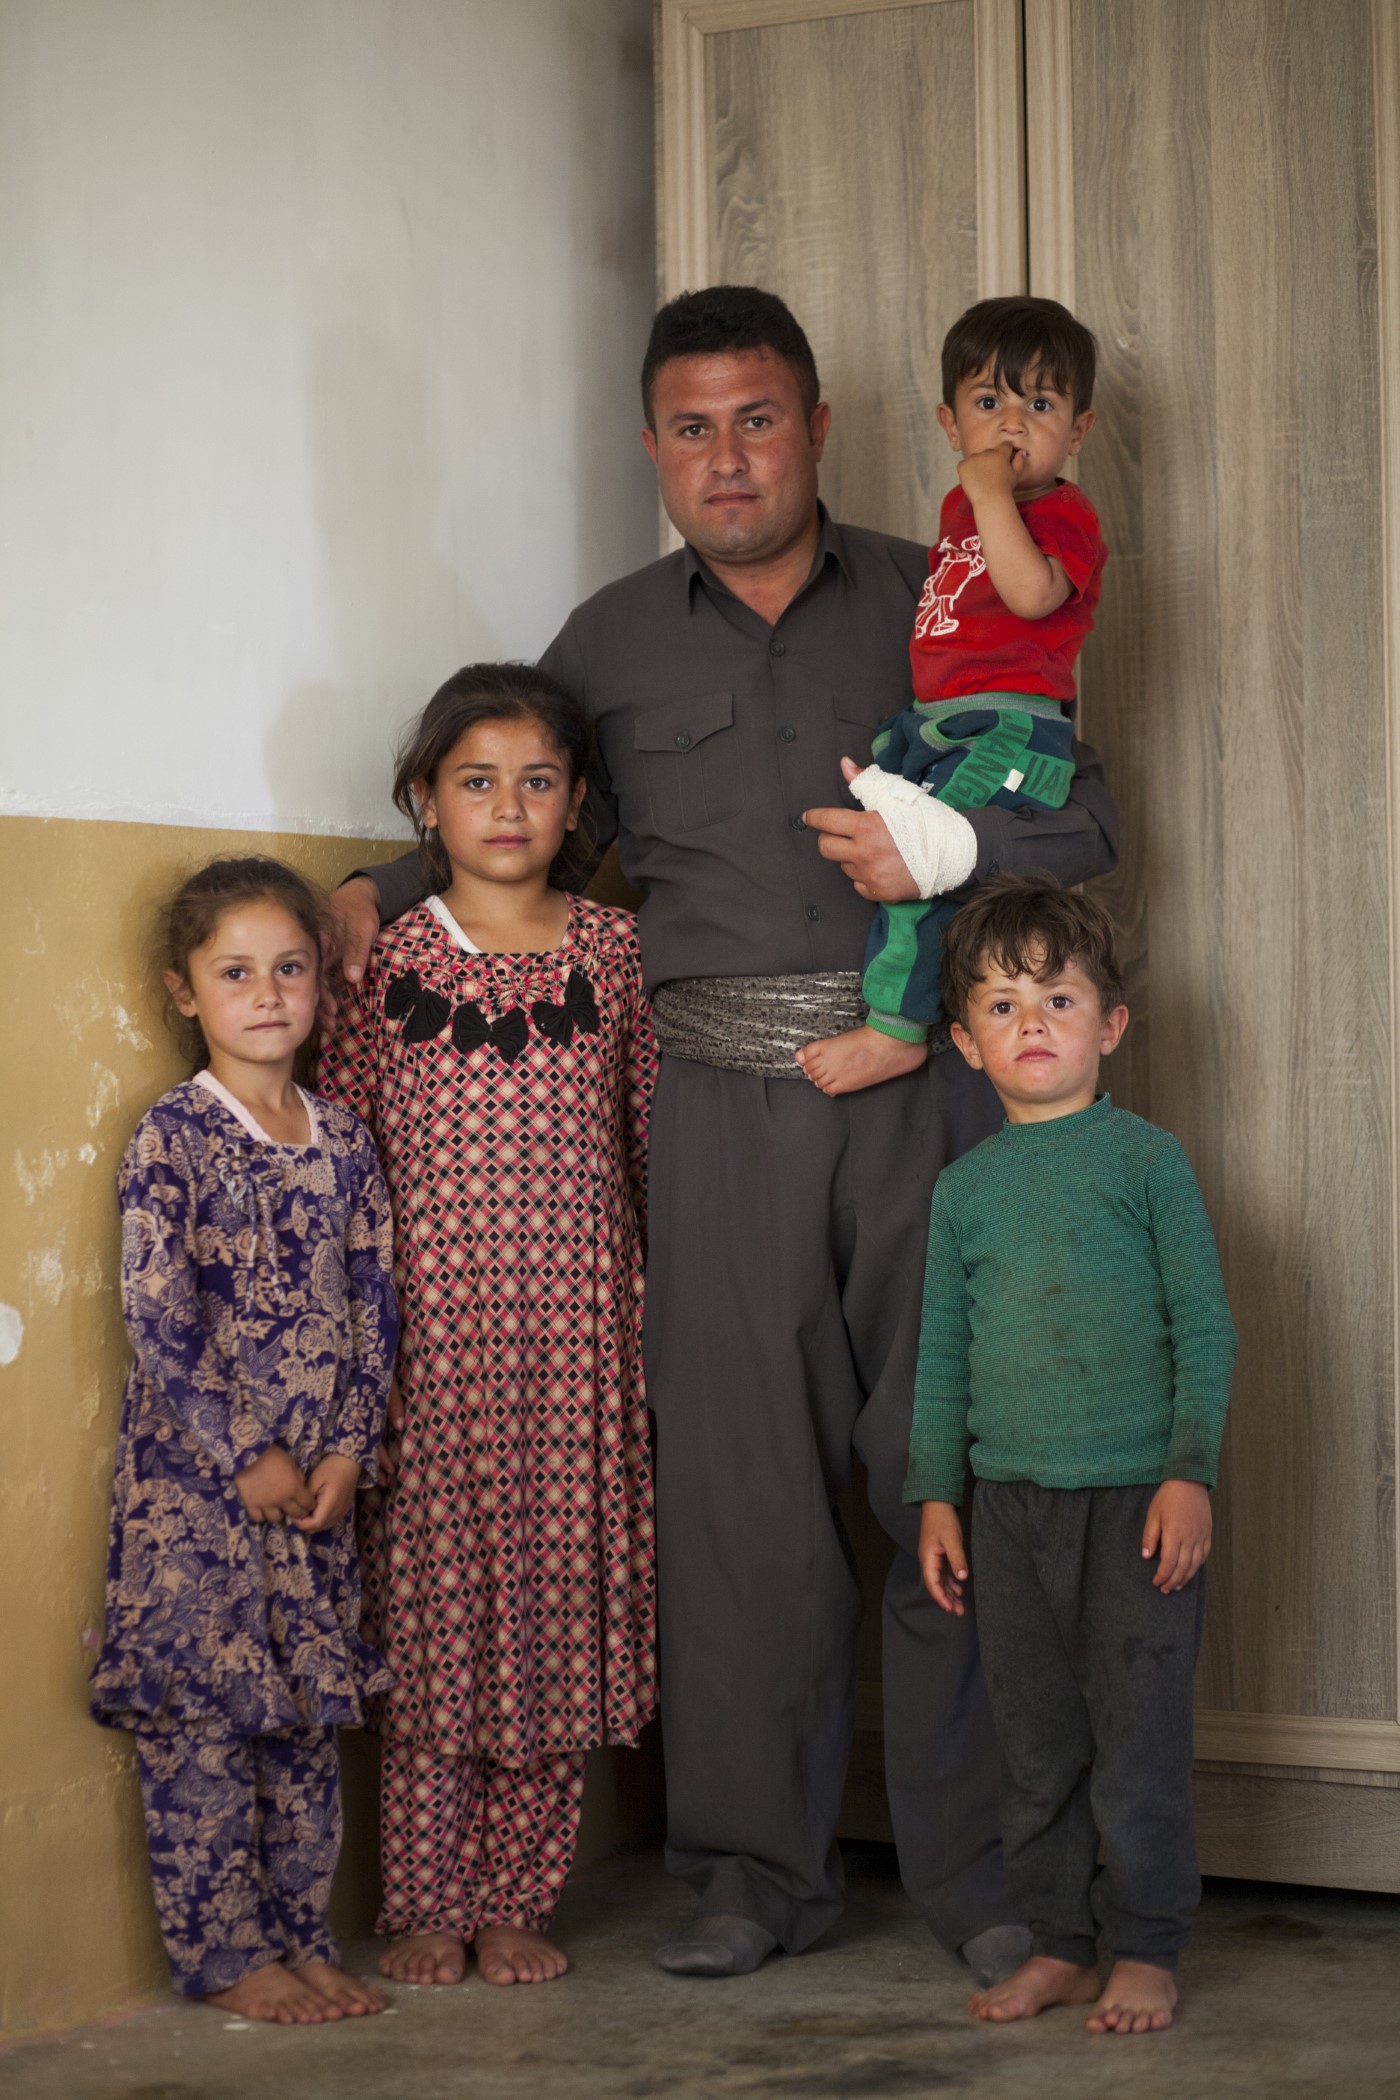 Abdulla (34), ex Peshmerga posa ante la cámara con su familia. En 2016, mientras luchaba en Kirkuk contra el EI, una bala le atravesó el cuello. Tras reanimarlo y estar cinco días inconsciente en el hospital, se pasó meses sin poder hablar, ver o comer. La bala le provocó una parálisis. Actualmente (2017), lleva 7 meses en cama con atención personal constante. No luchaba por ningún partido político, sino para poder ver crecer a sus hijos. Ranya, Kurdistán, Irak. 14 de mayo de 2017